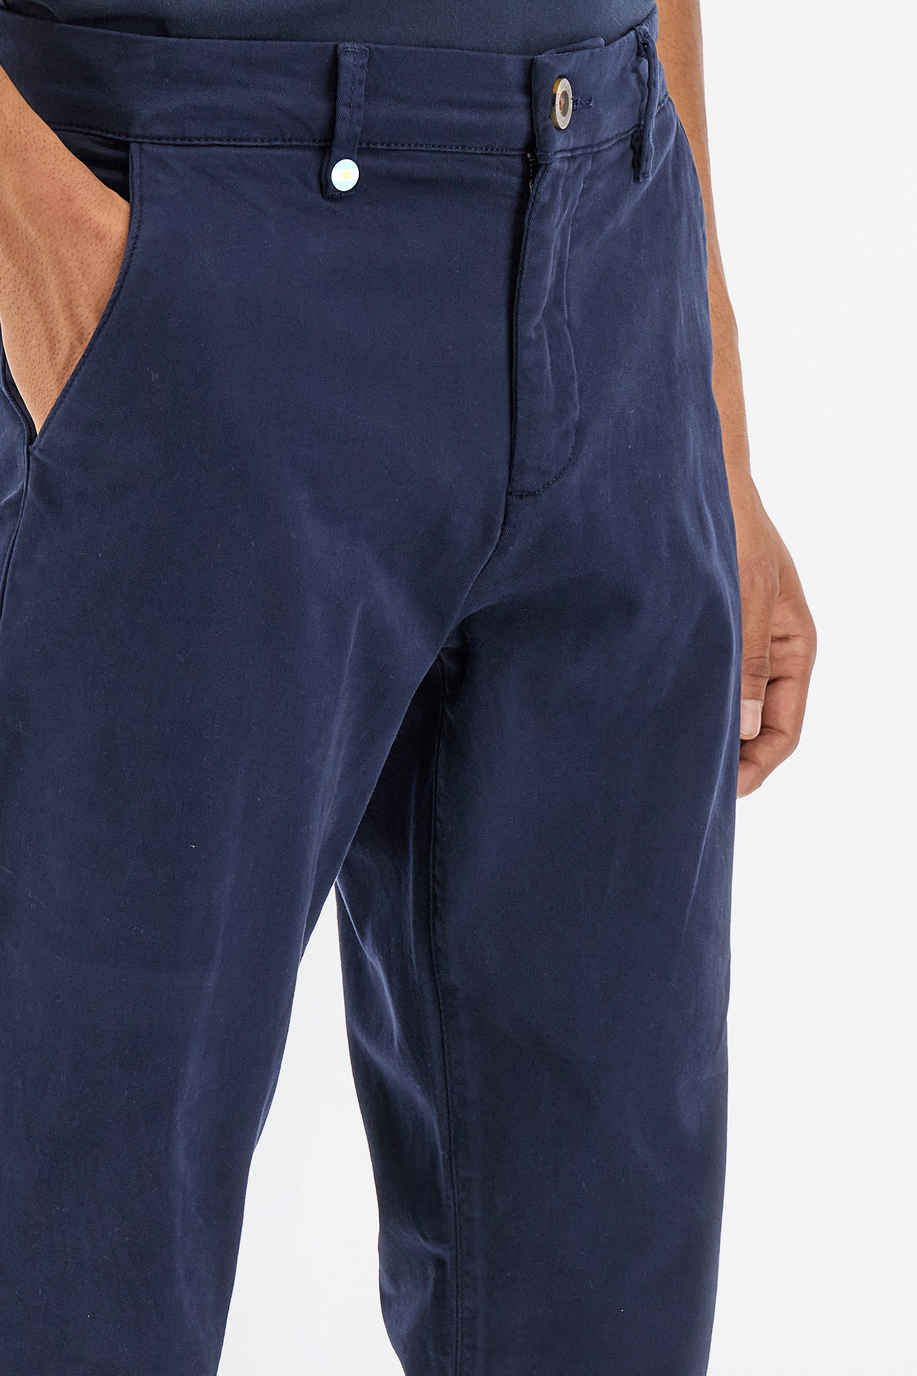 Pantalone da uomo in cotone twill stretch modello chino slim fit - Look eleganti per lui | La Martina - Official Online Shop